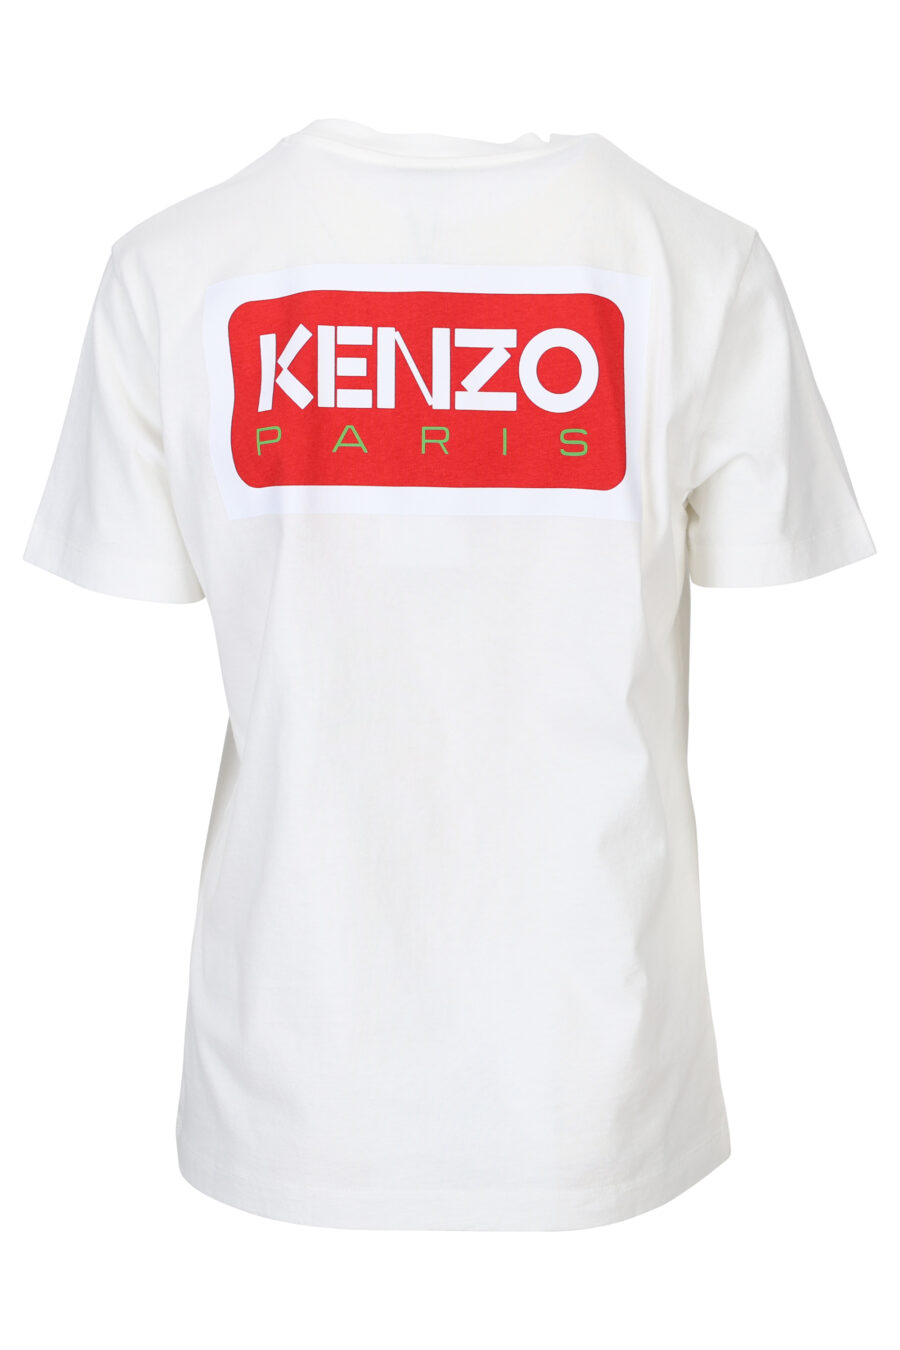 T-shirt branca oversize com o logótipo "kenzo paris" - 3612230520875 1